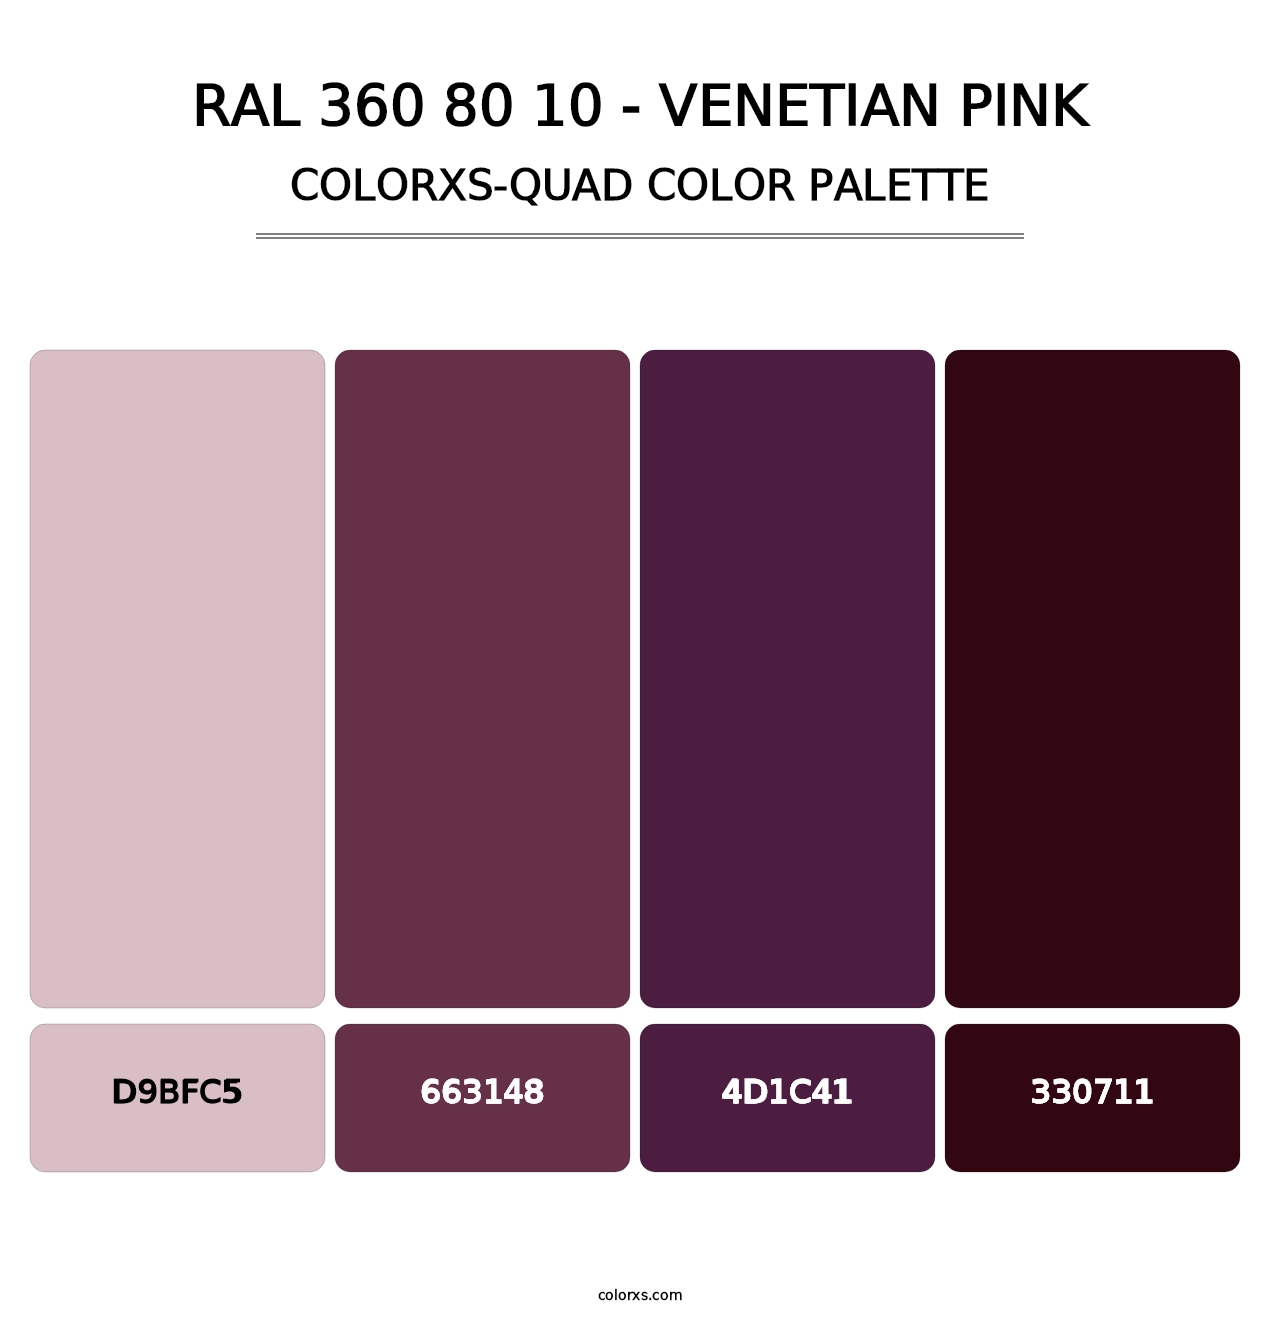 RAL 360 80 10 - Venetian Pink - Colorxs Quad Palette